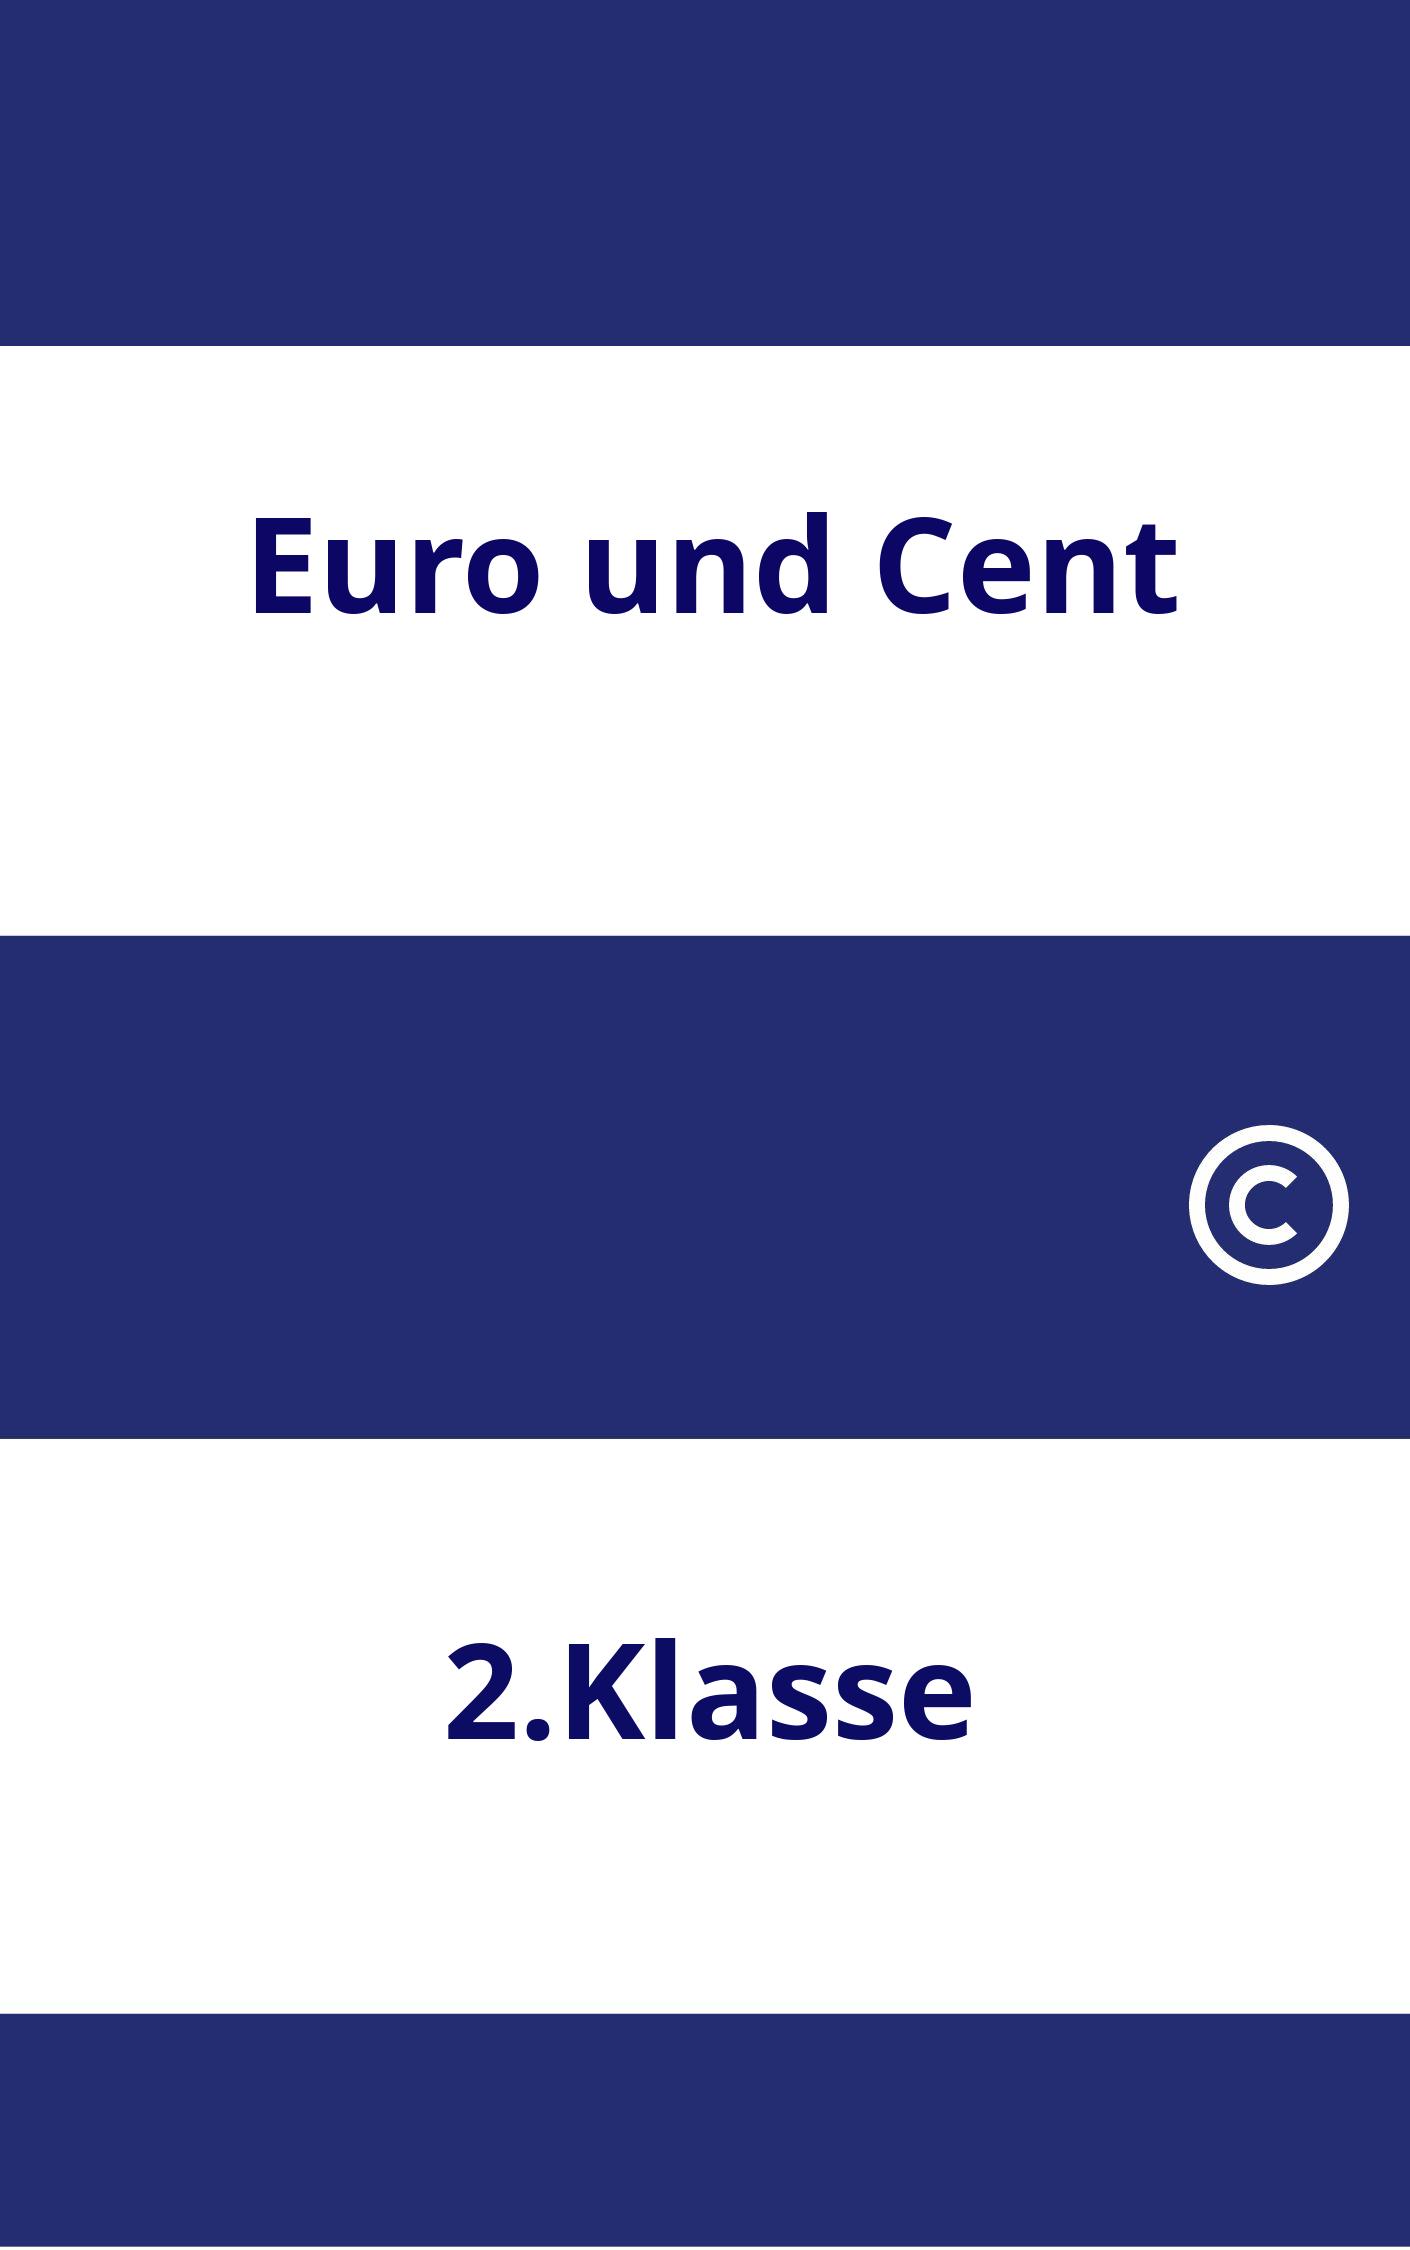 Euro und Cent 2.Klasse Arbeitsblätter PDF